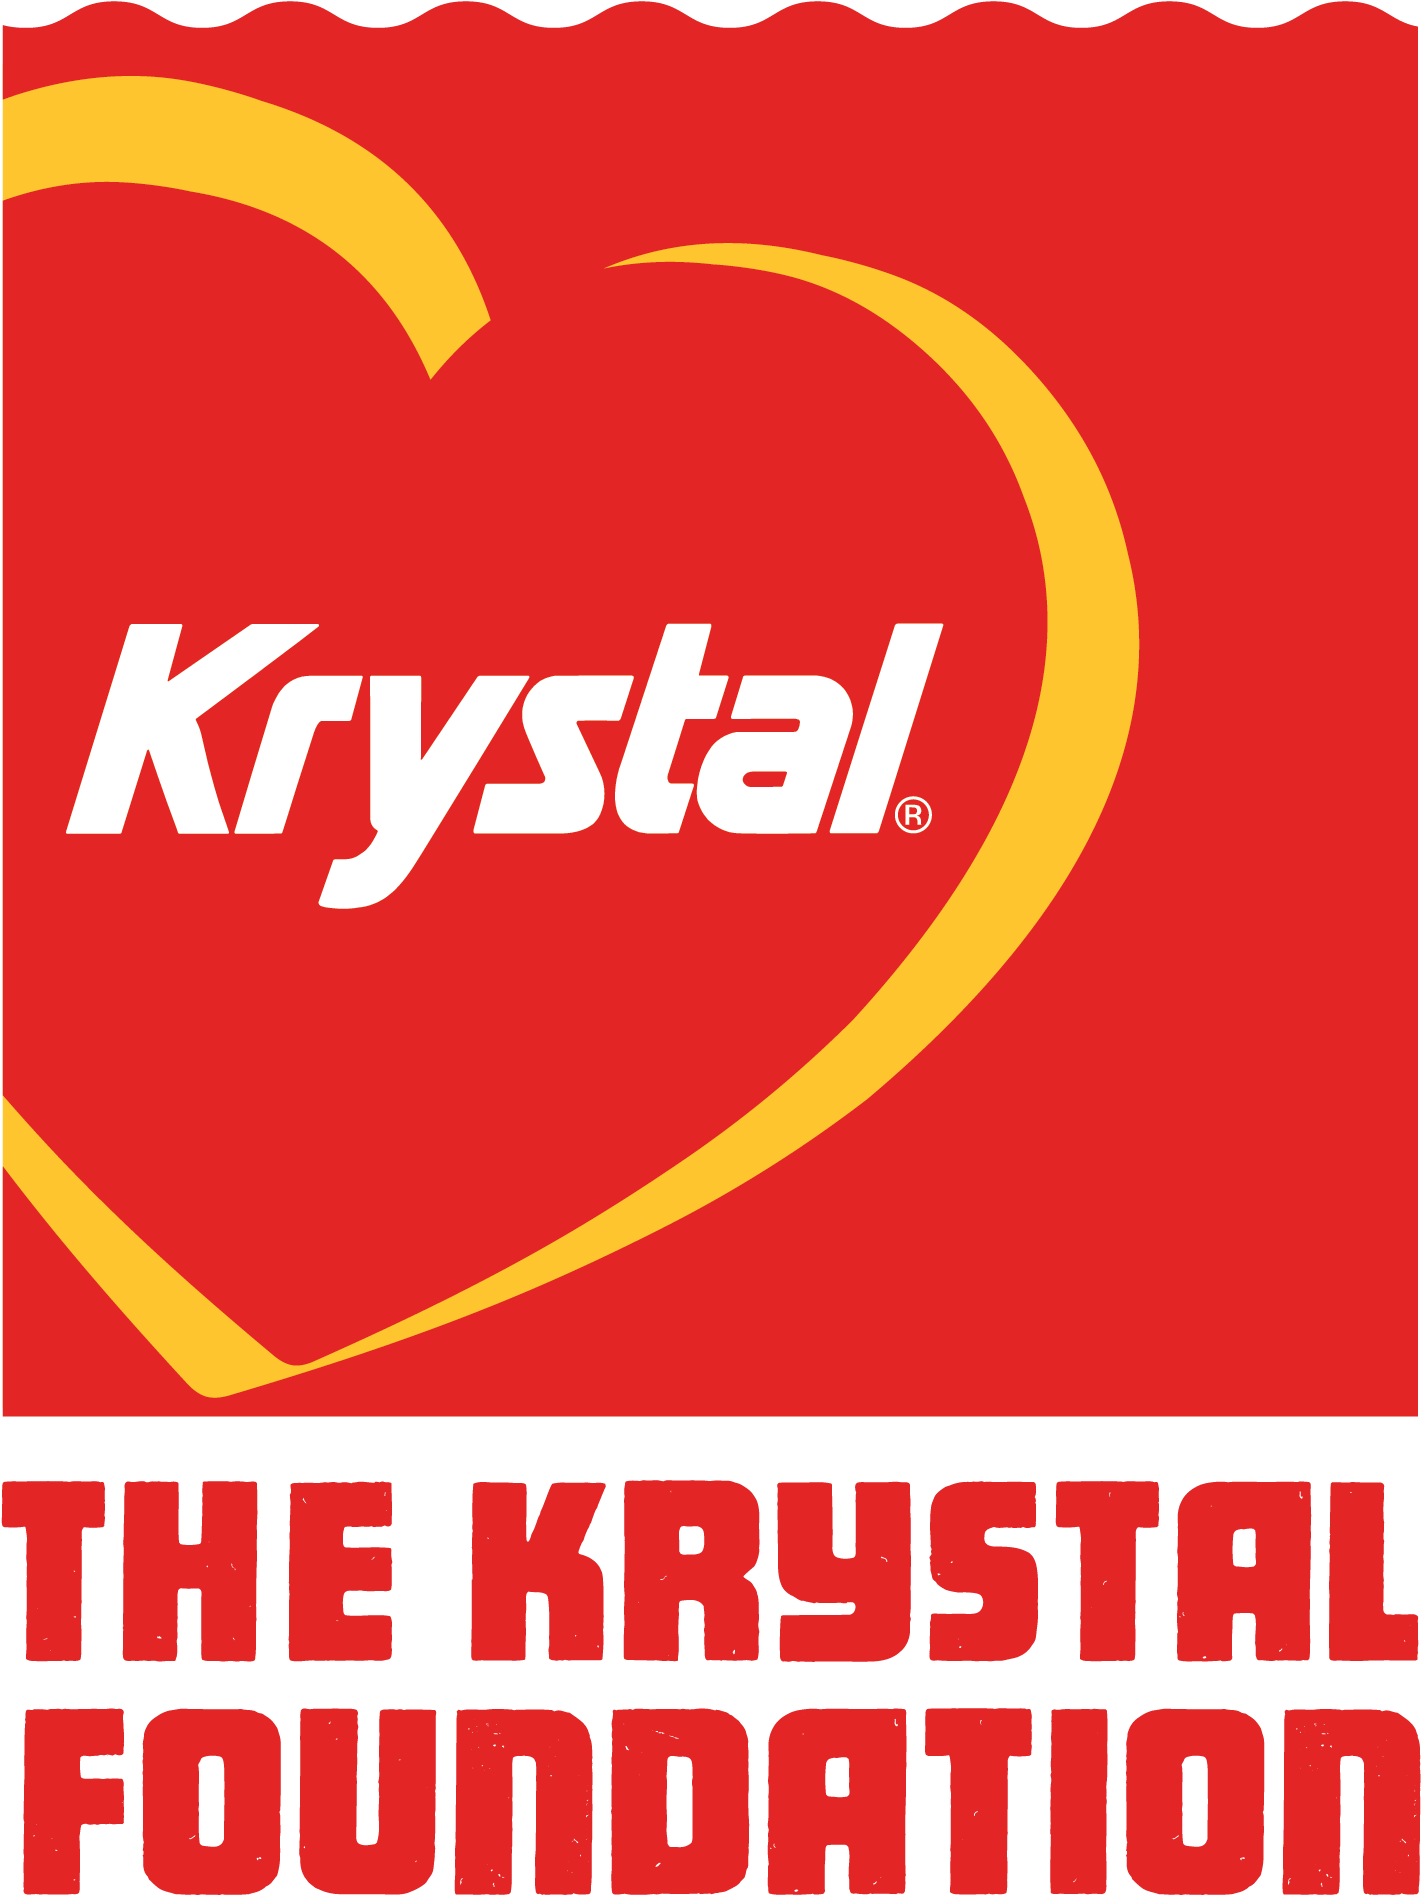 Krystal Logo - HD Home Of The Krystal Burger - Krystal Burger Transparent PNG Image ...